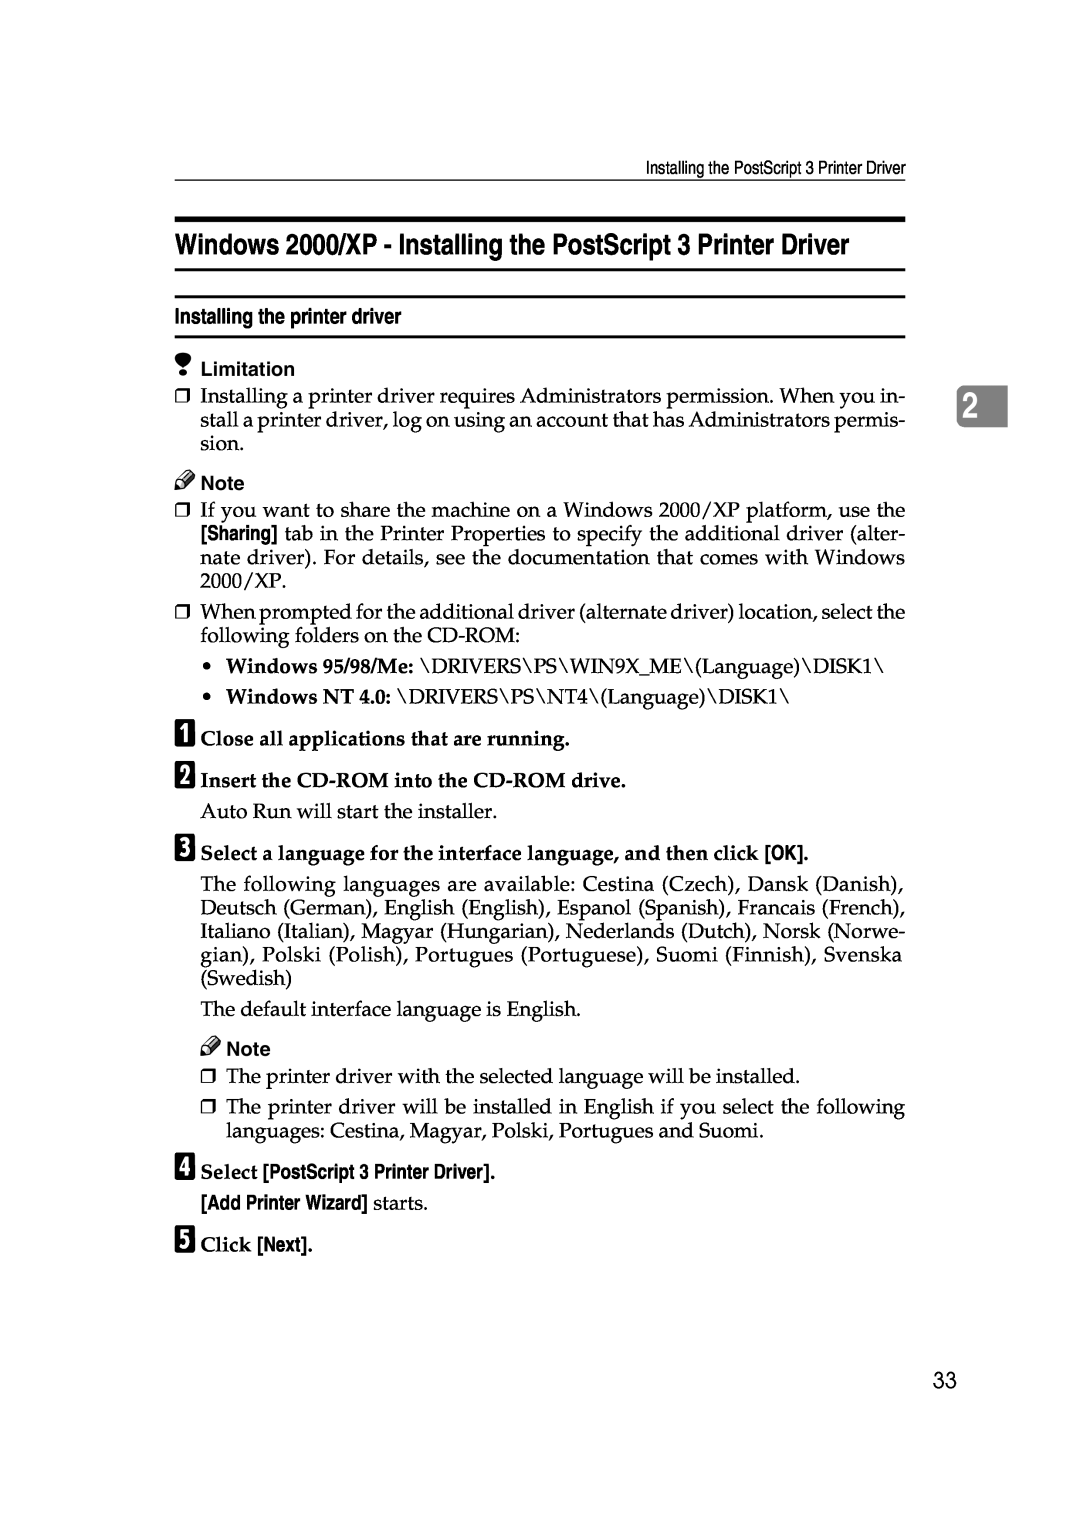 Xerox 1075 manual Windows 2000/XP - Installing the PostScript 3 Printer Driver, Installing the printer driver, Limitation 